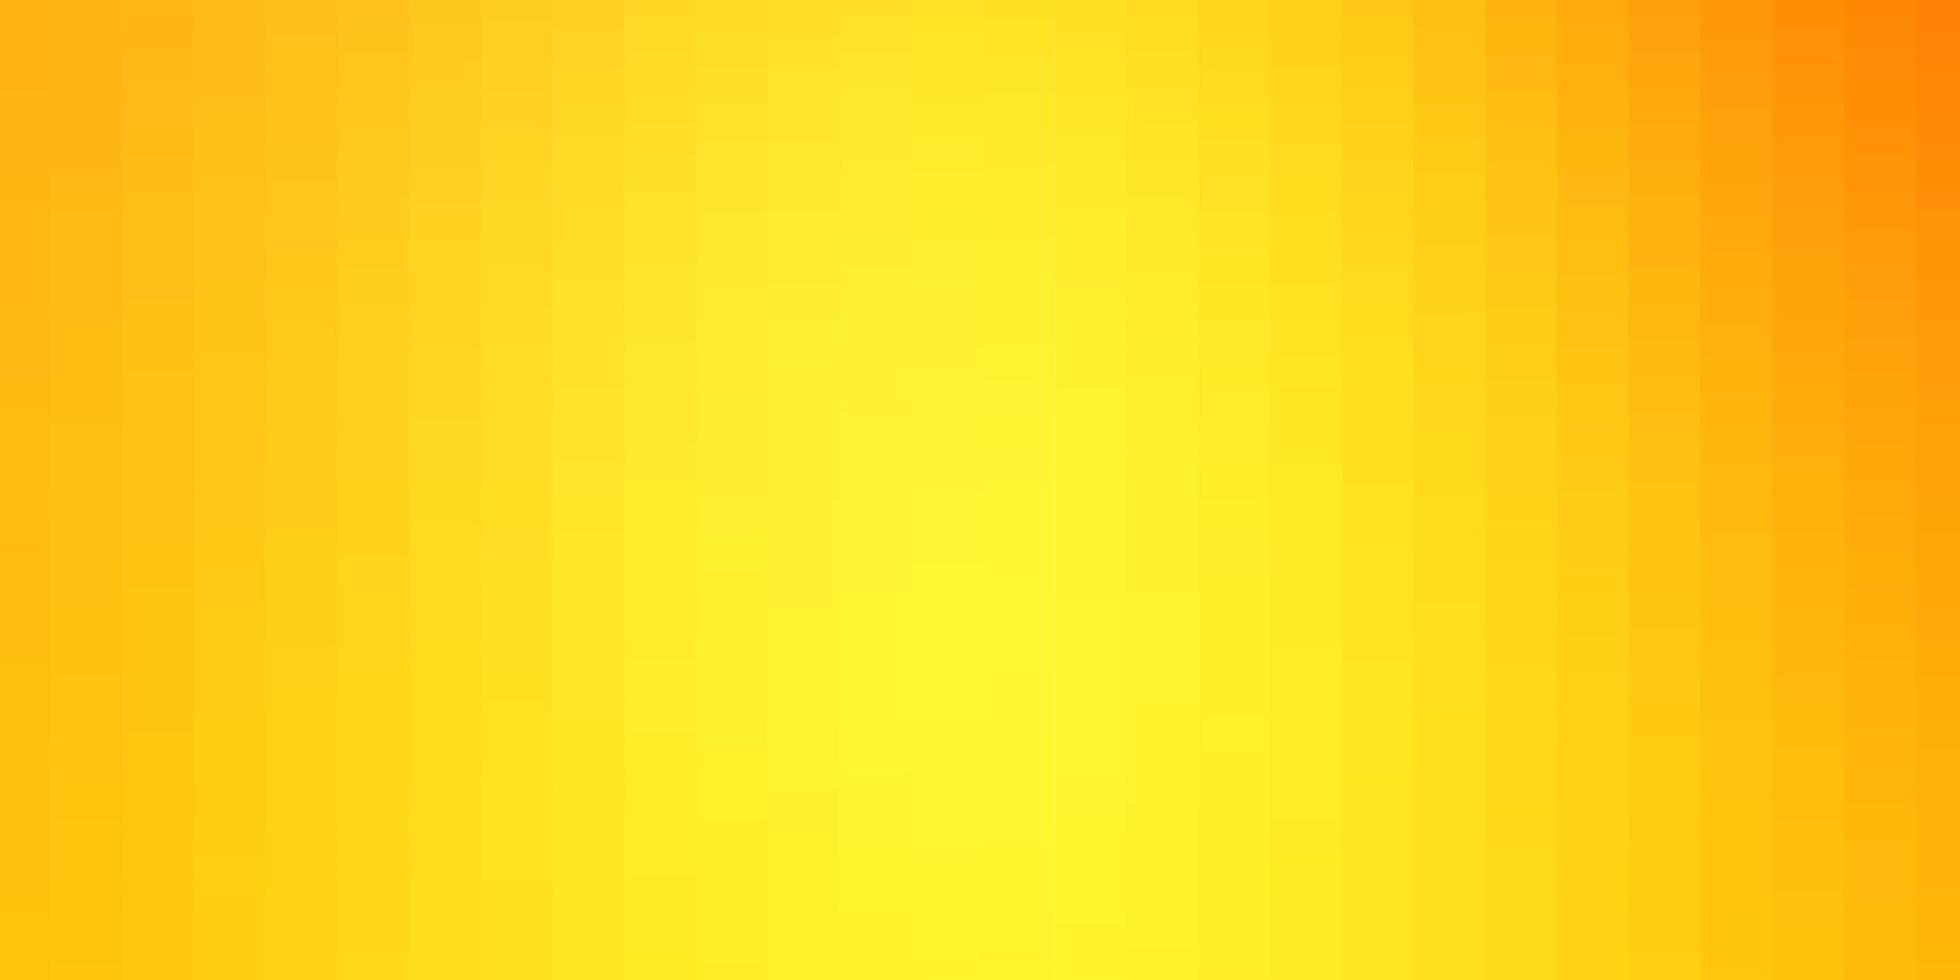 textura de vector amarillo claro en estilo rectangular.